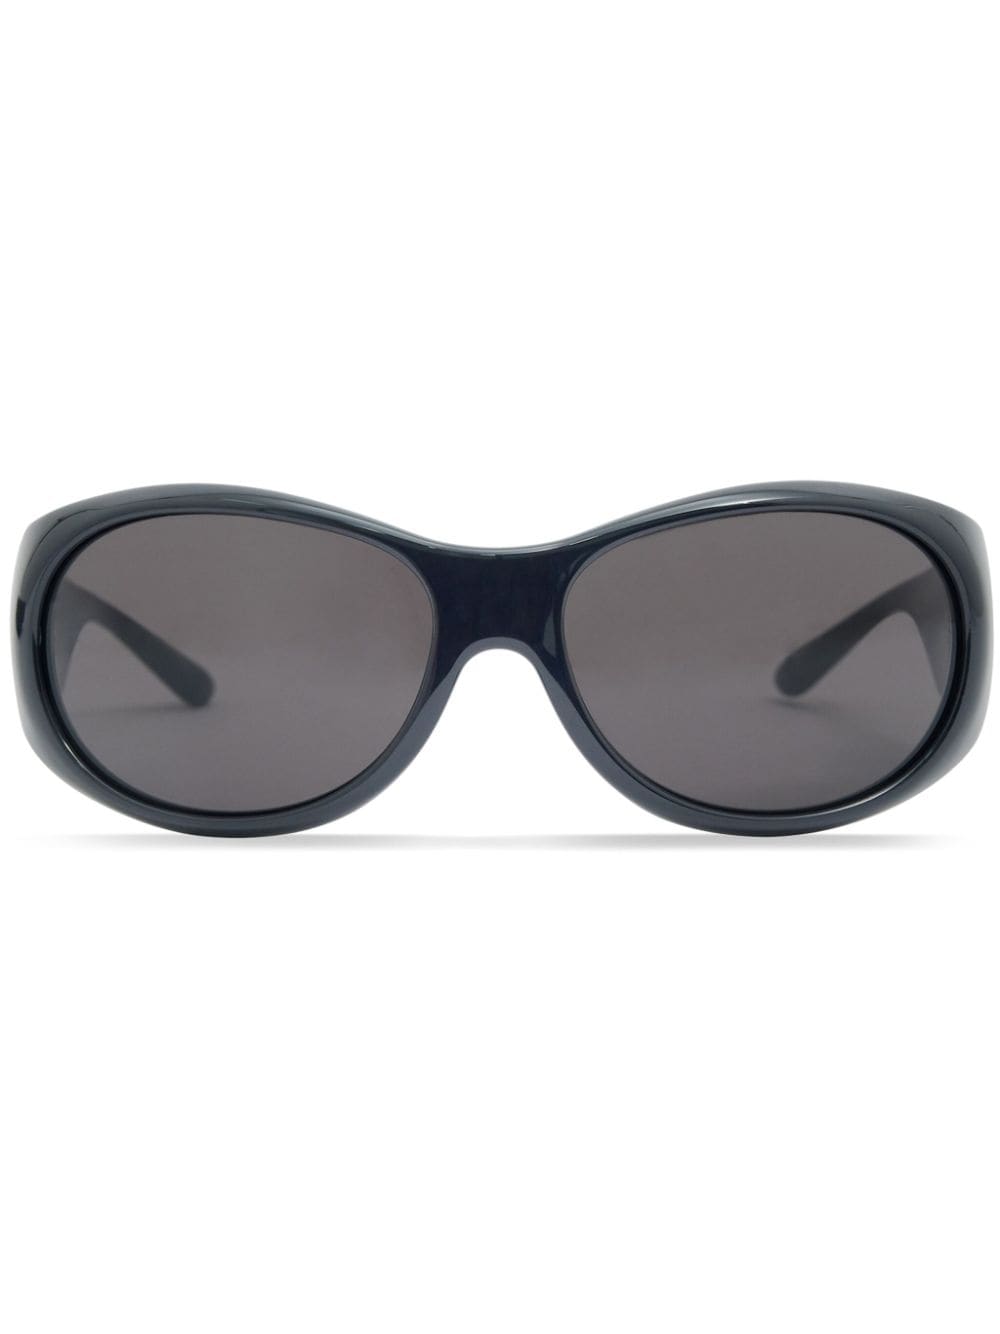 Courrèges Hybrid 01 acetate sunglasses - Black von Courrèges